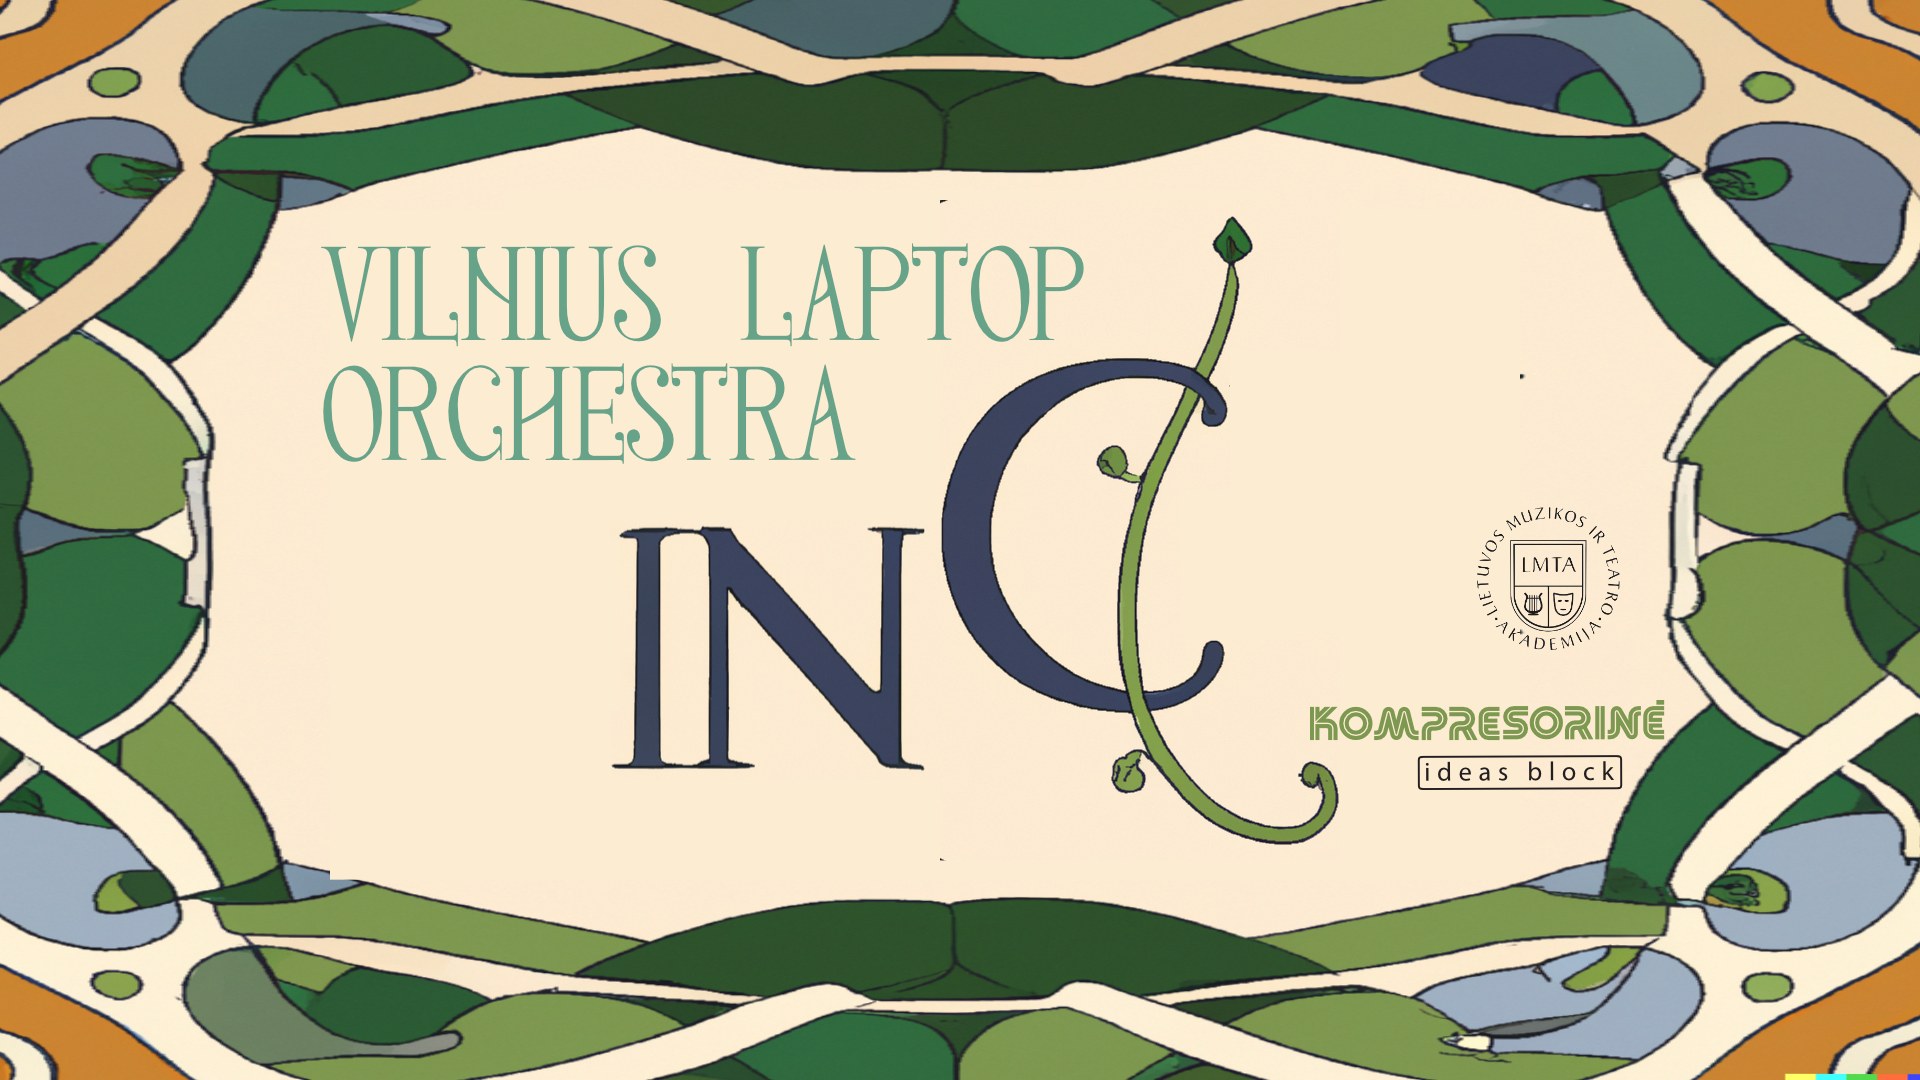 Vilnius laptop orchestra